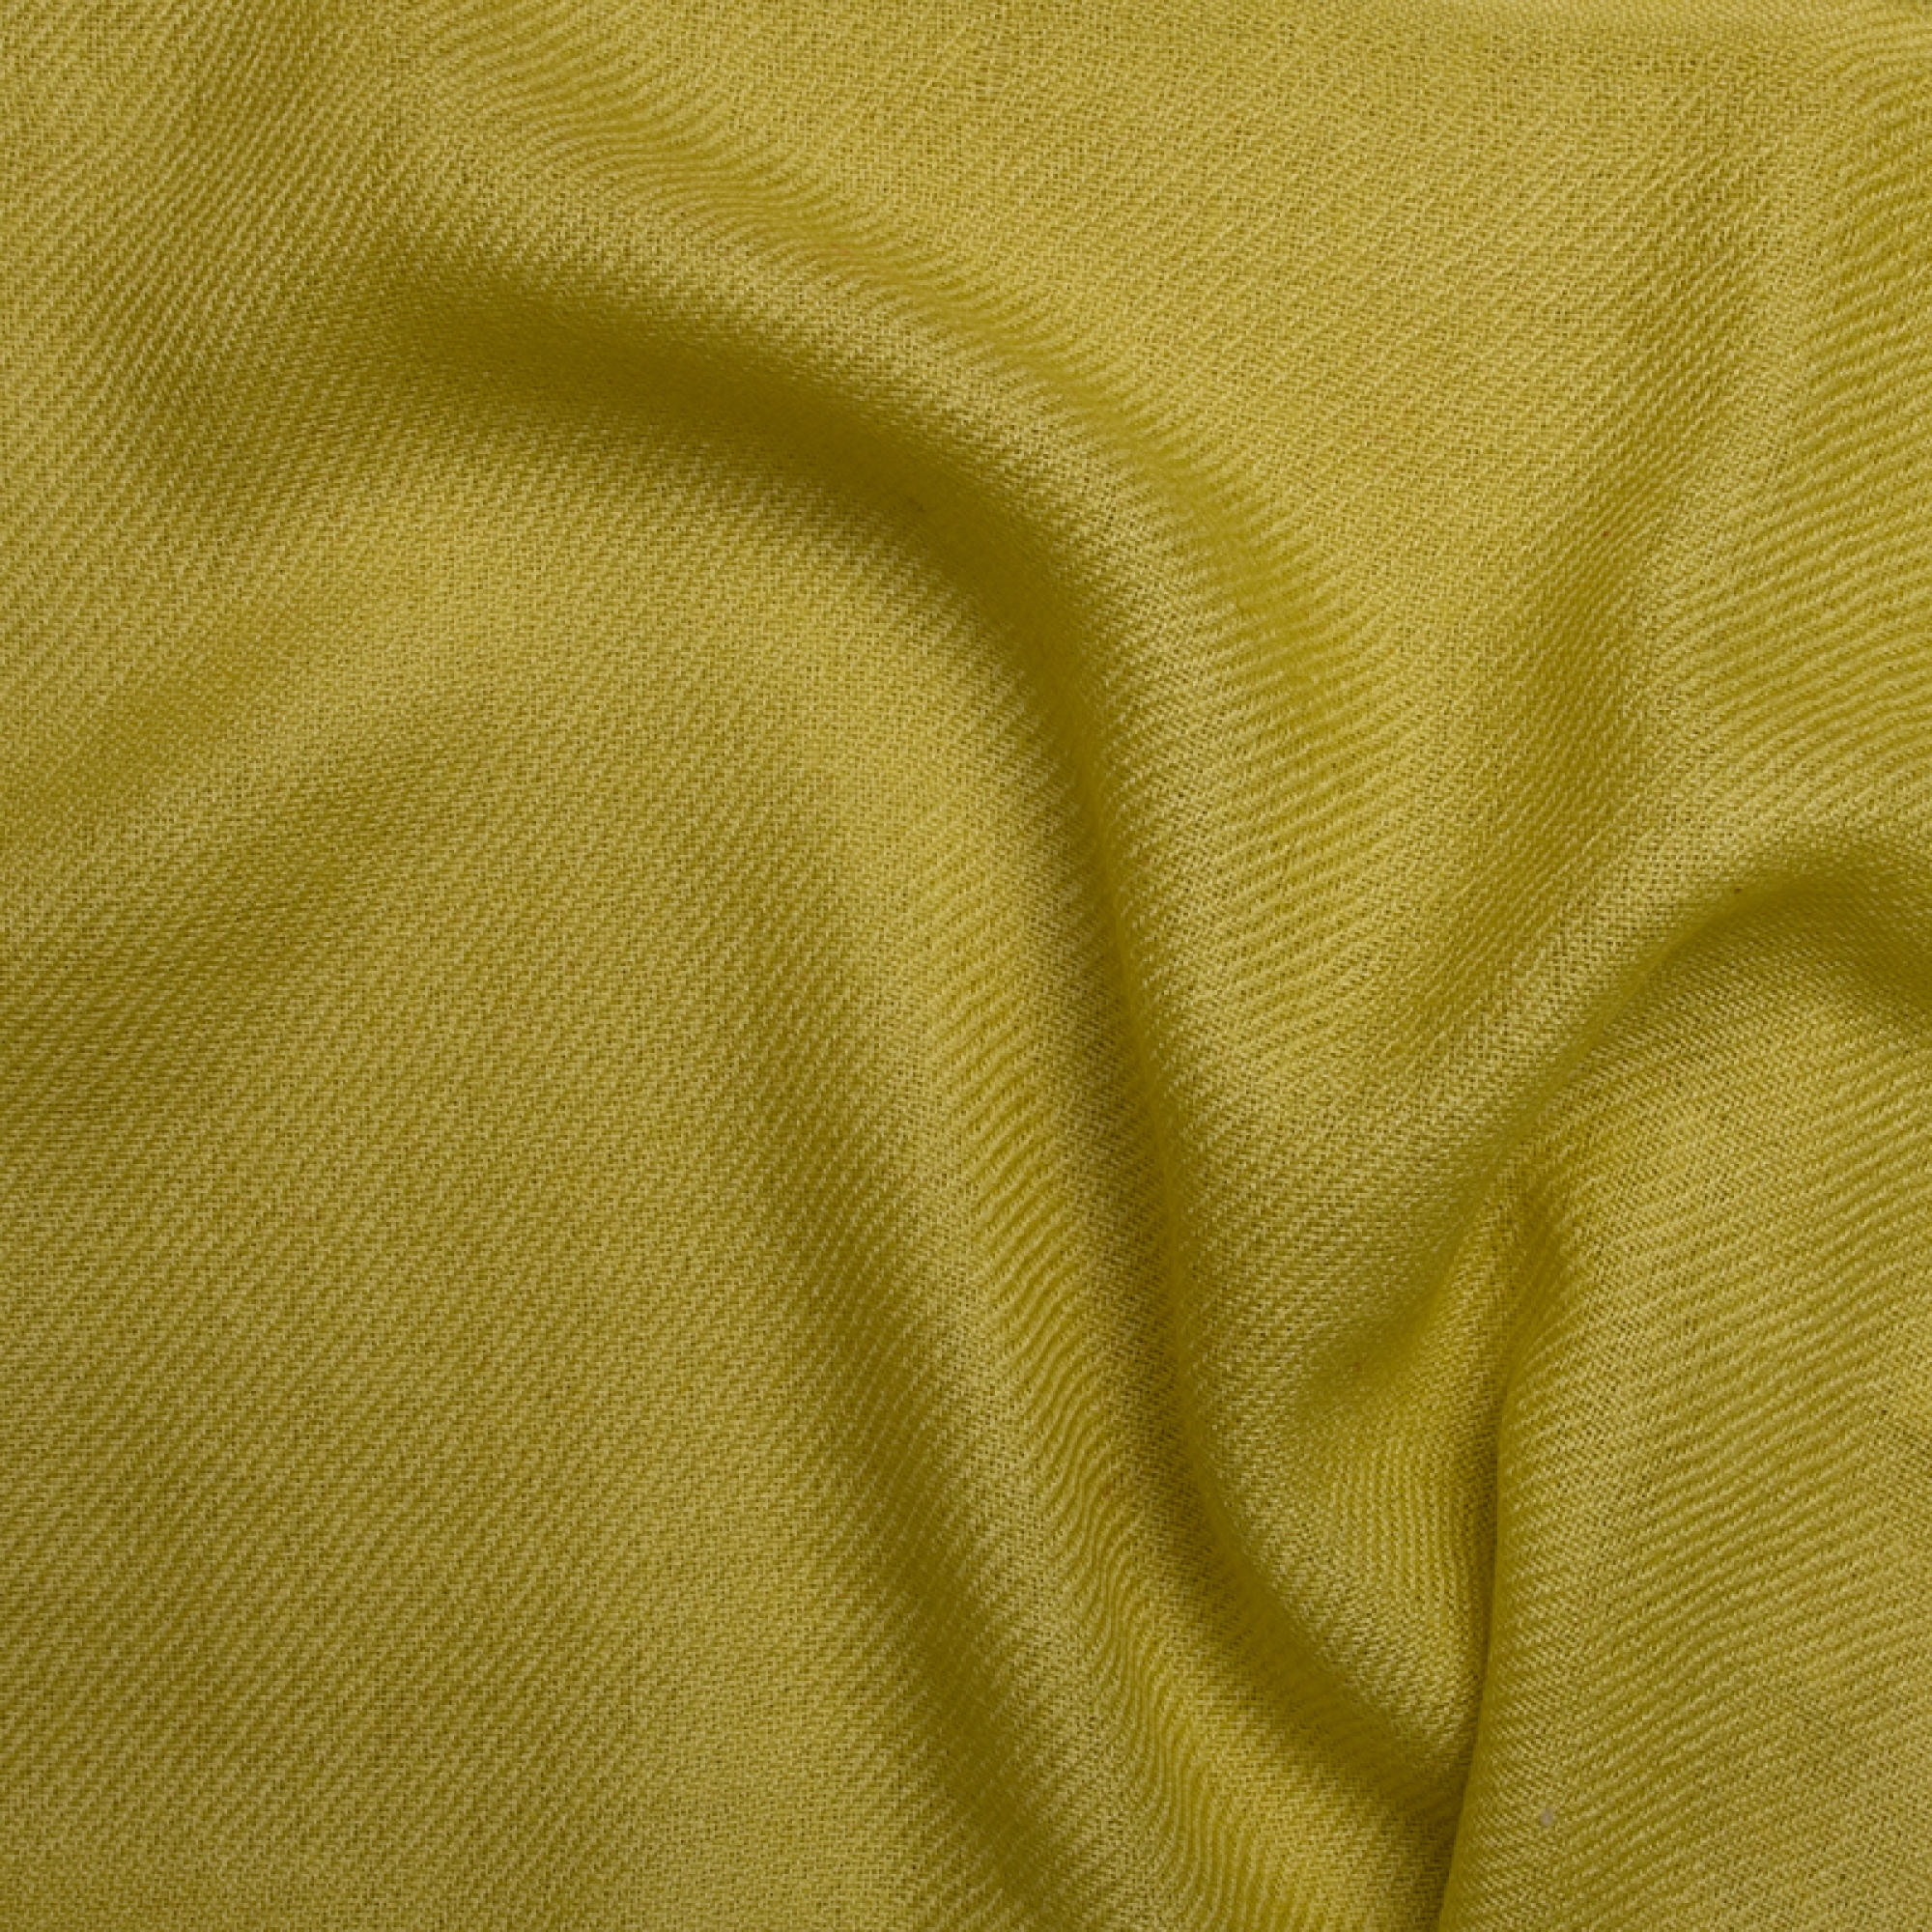 Cachemire accessoires couvertures plaids toodoo plain xl 240 x 260 vert chantant 240 x 260 cm